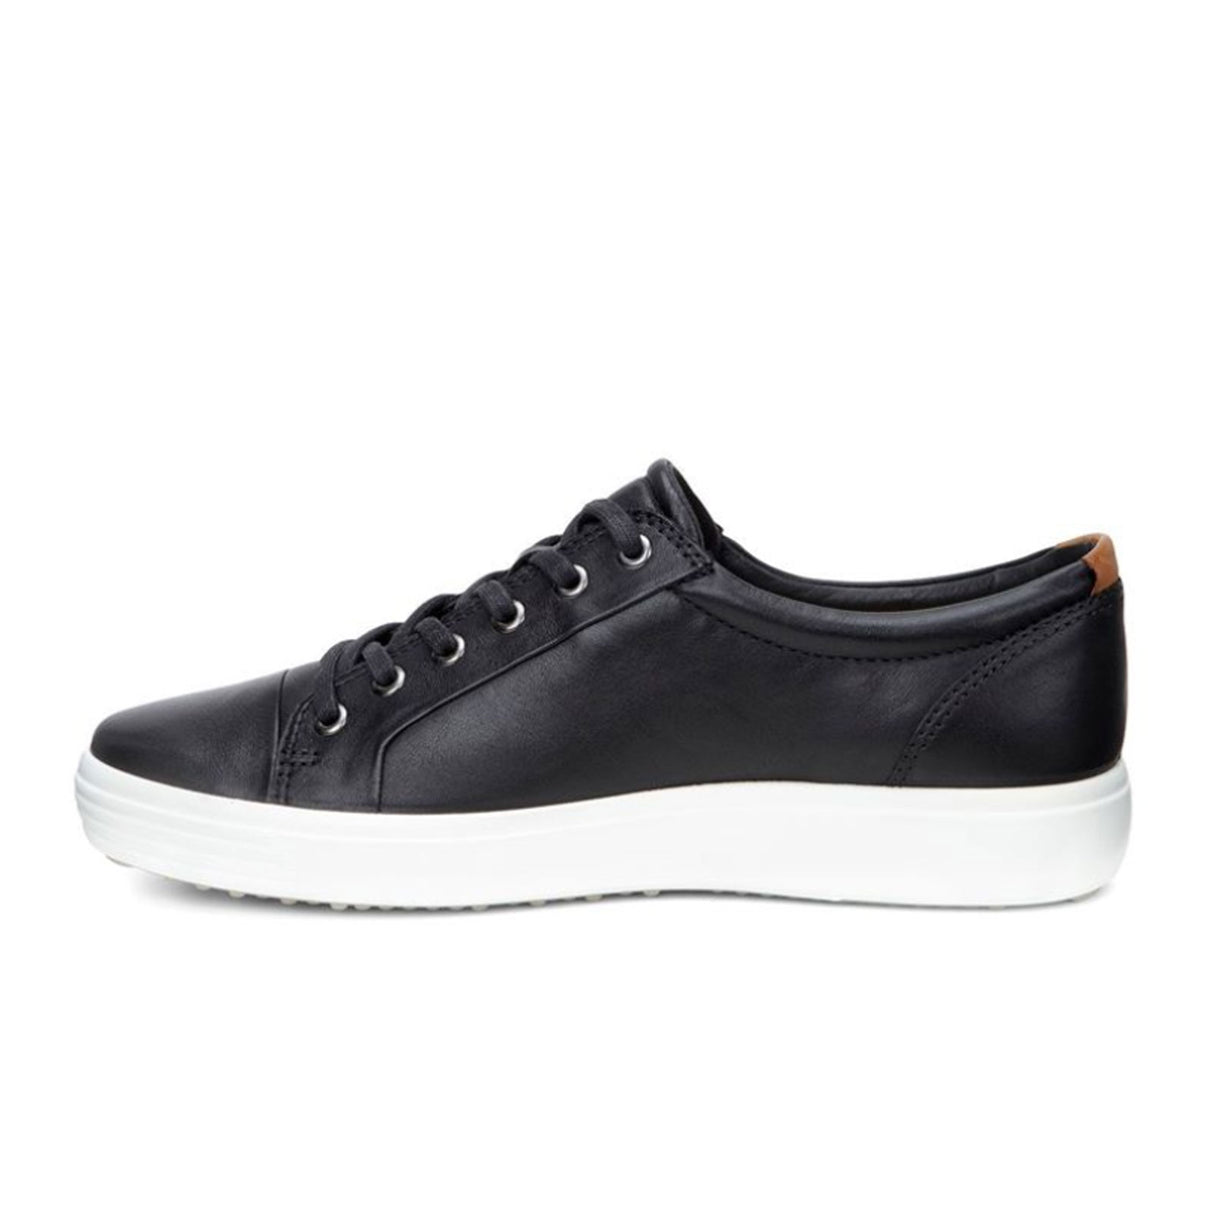 ECCO Soft 7 Sneaker (Men) - Black/Black Dress-Casual - Sneakers - The Heel Shoe Fitters